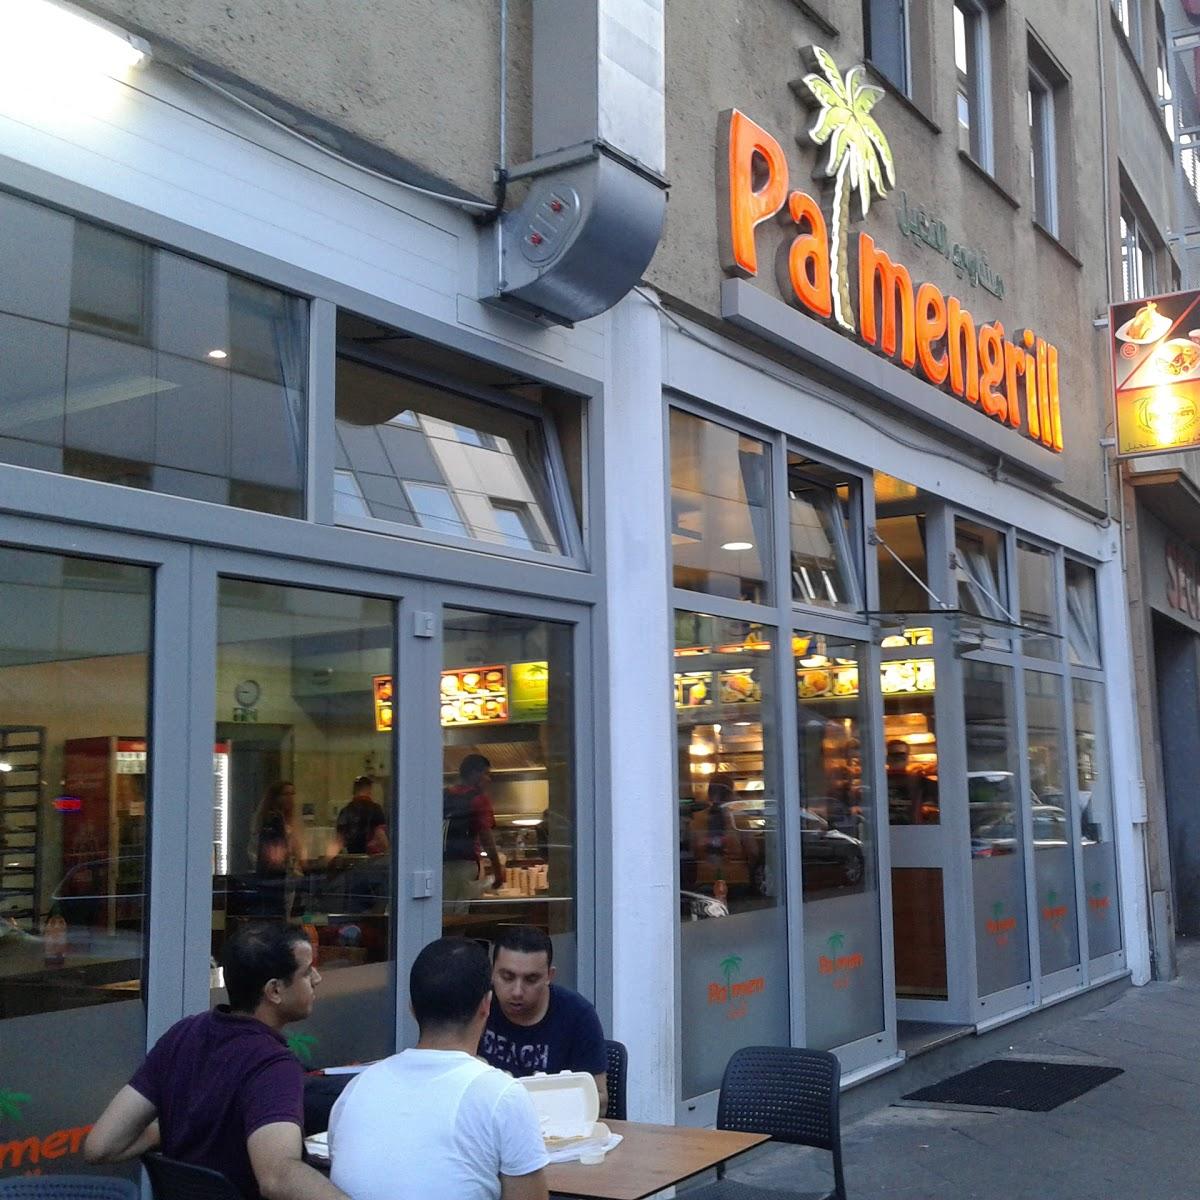 Restaurant "Palmen Grill Konsti" in Frankfurt am Main